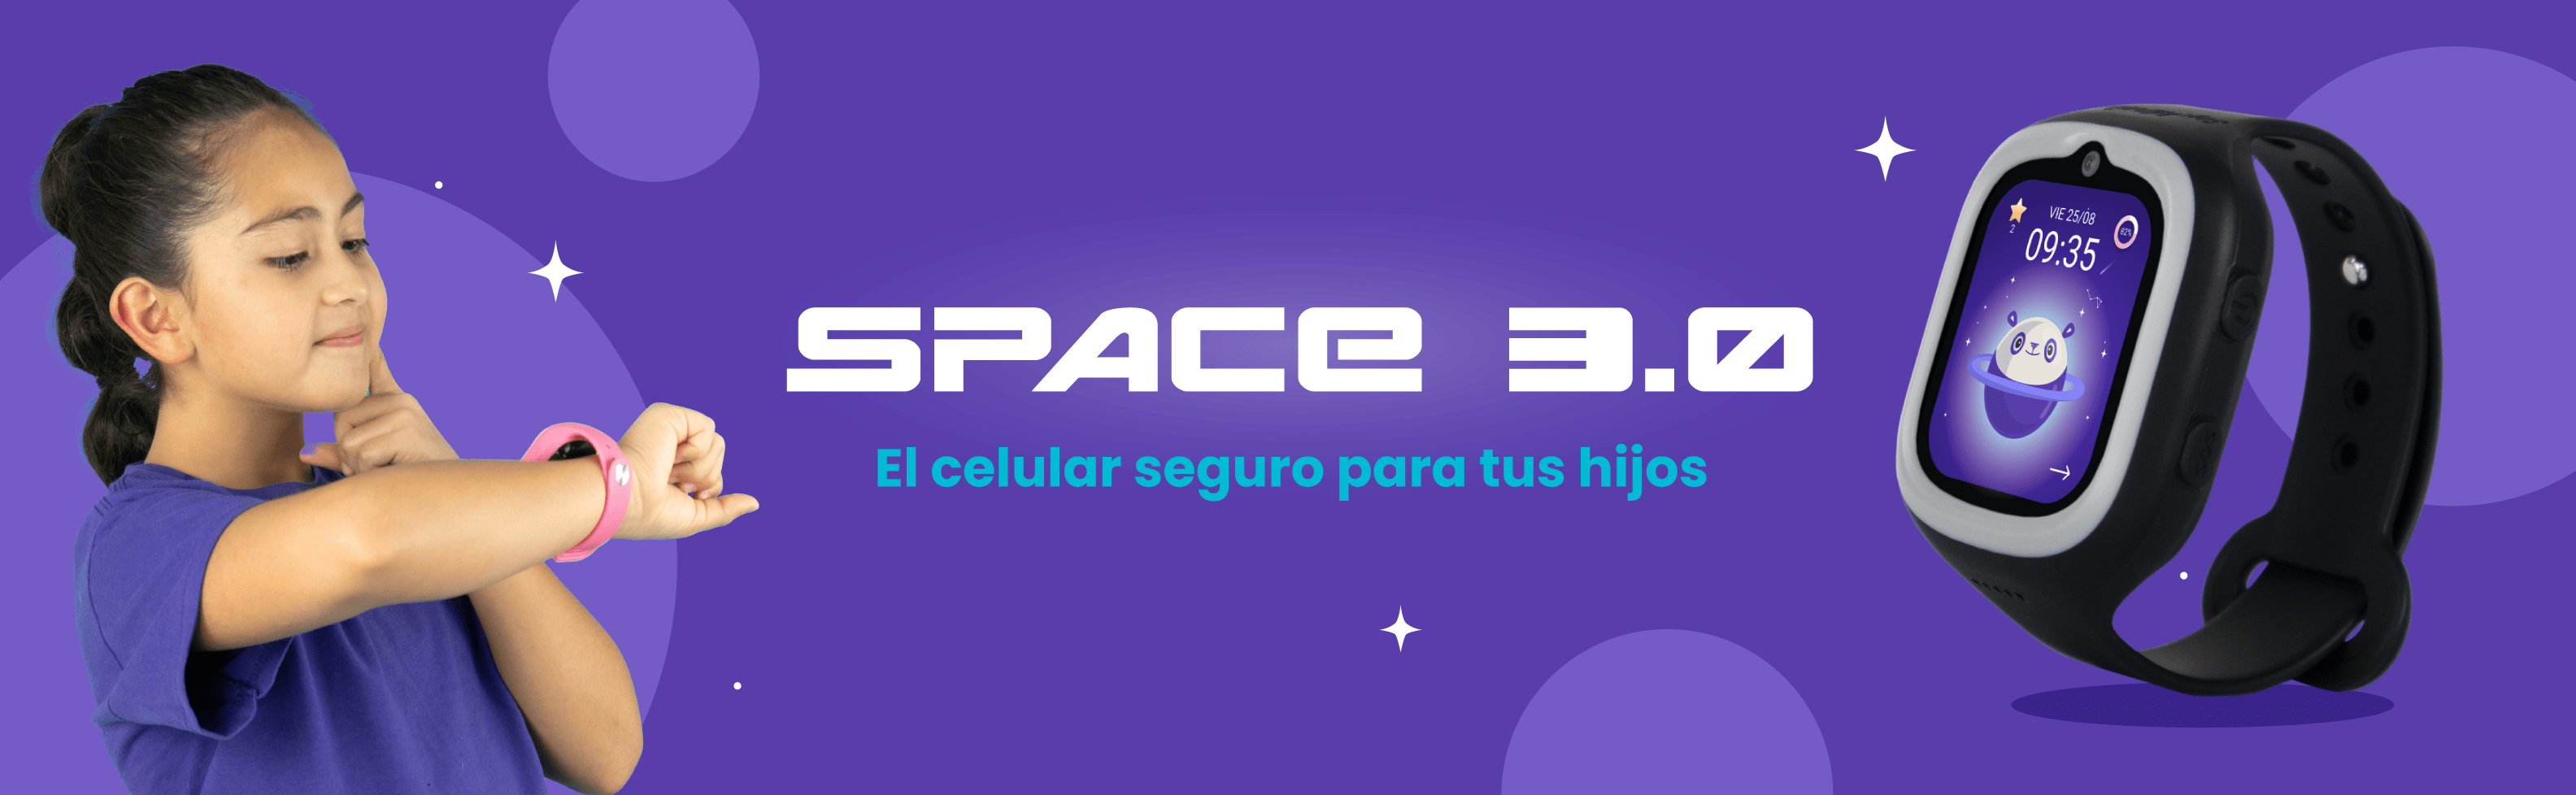 Banner Space 3_Desktop 2-min.png__PID:367c0e2e-0016-4586-a881-0f5a759a1508